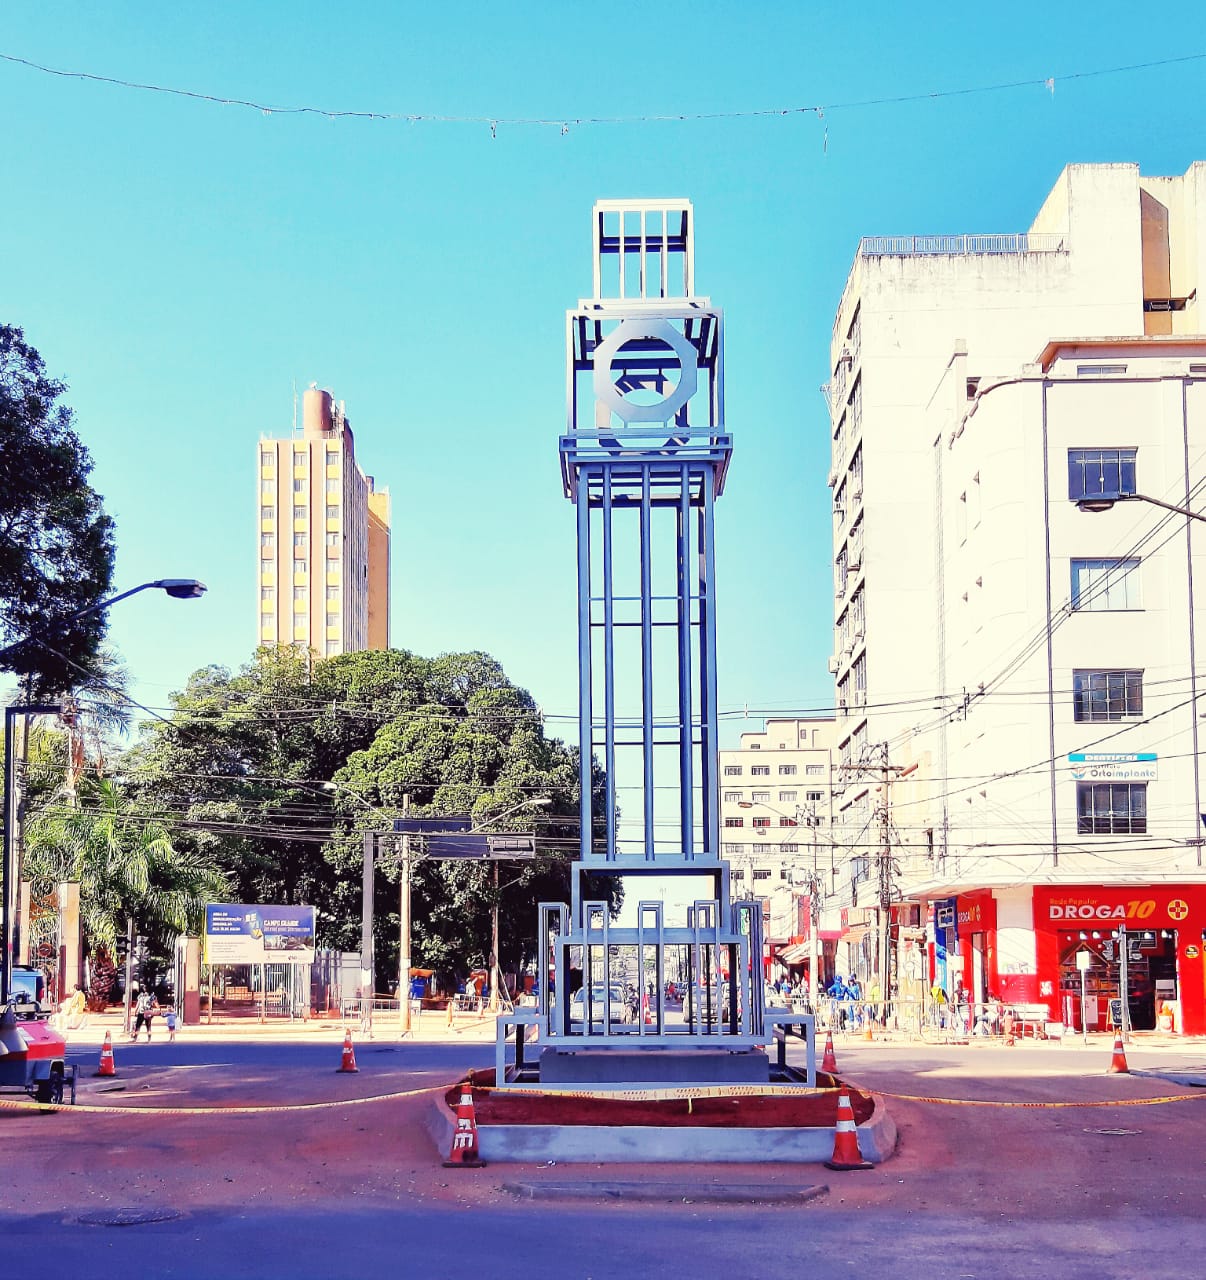 Instalado na 14 de julho, monumento resgata a história econômica e social de Campo Grande